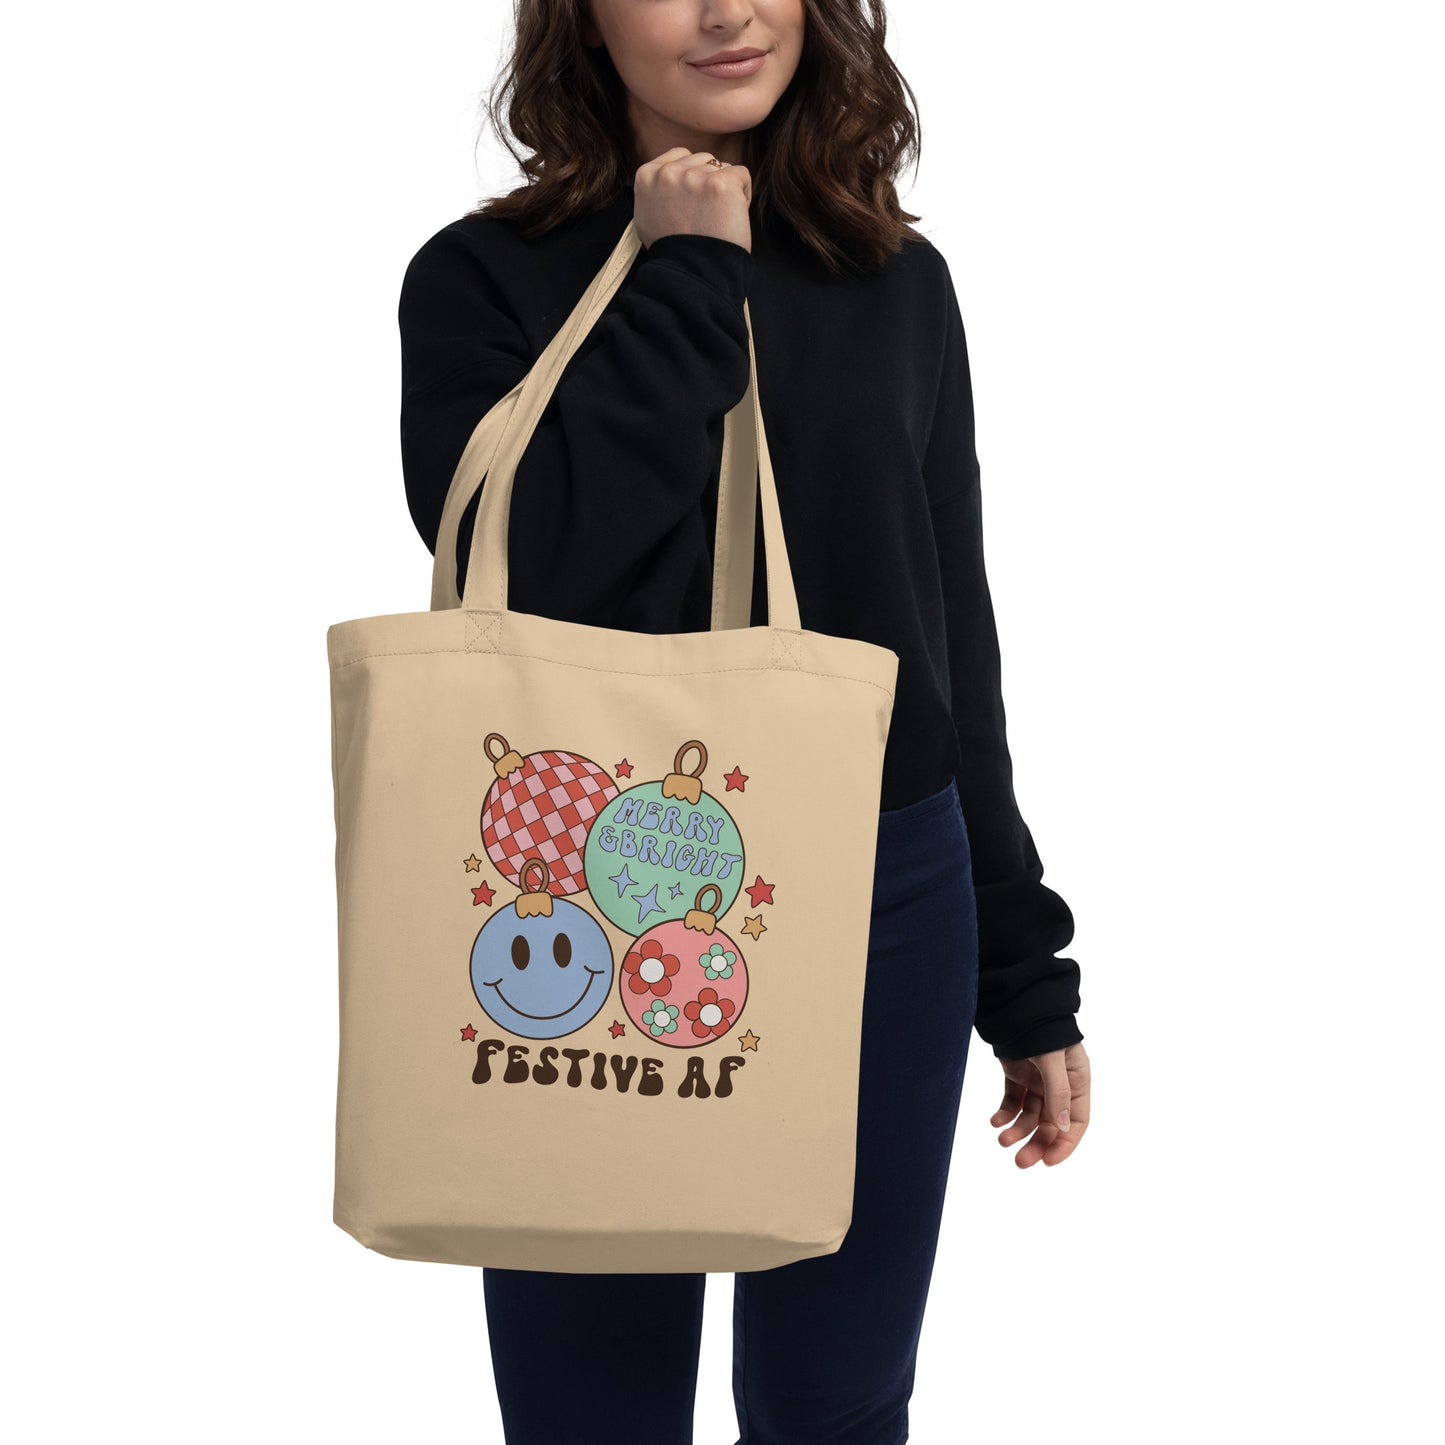 Festive AF Eco Tote Bag